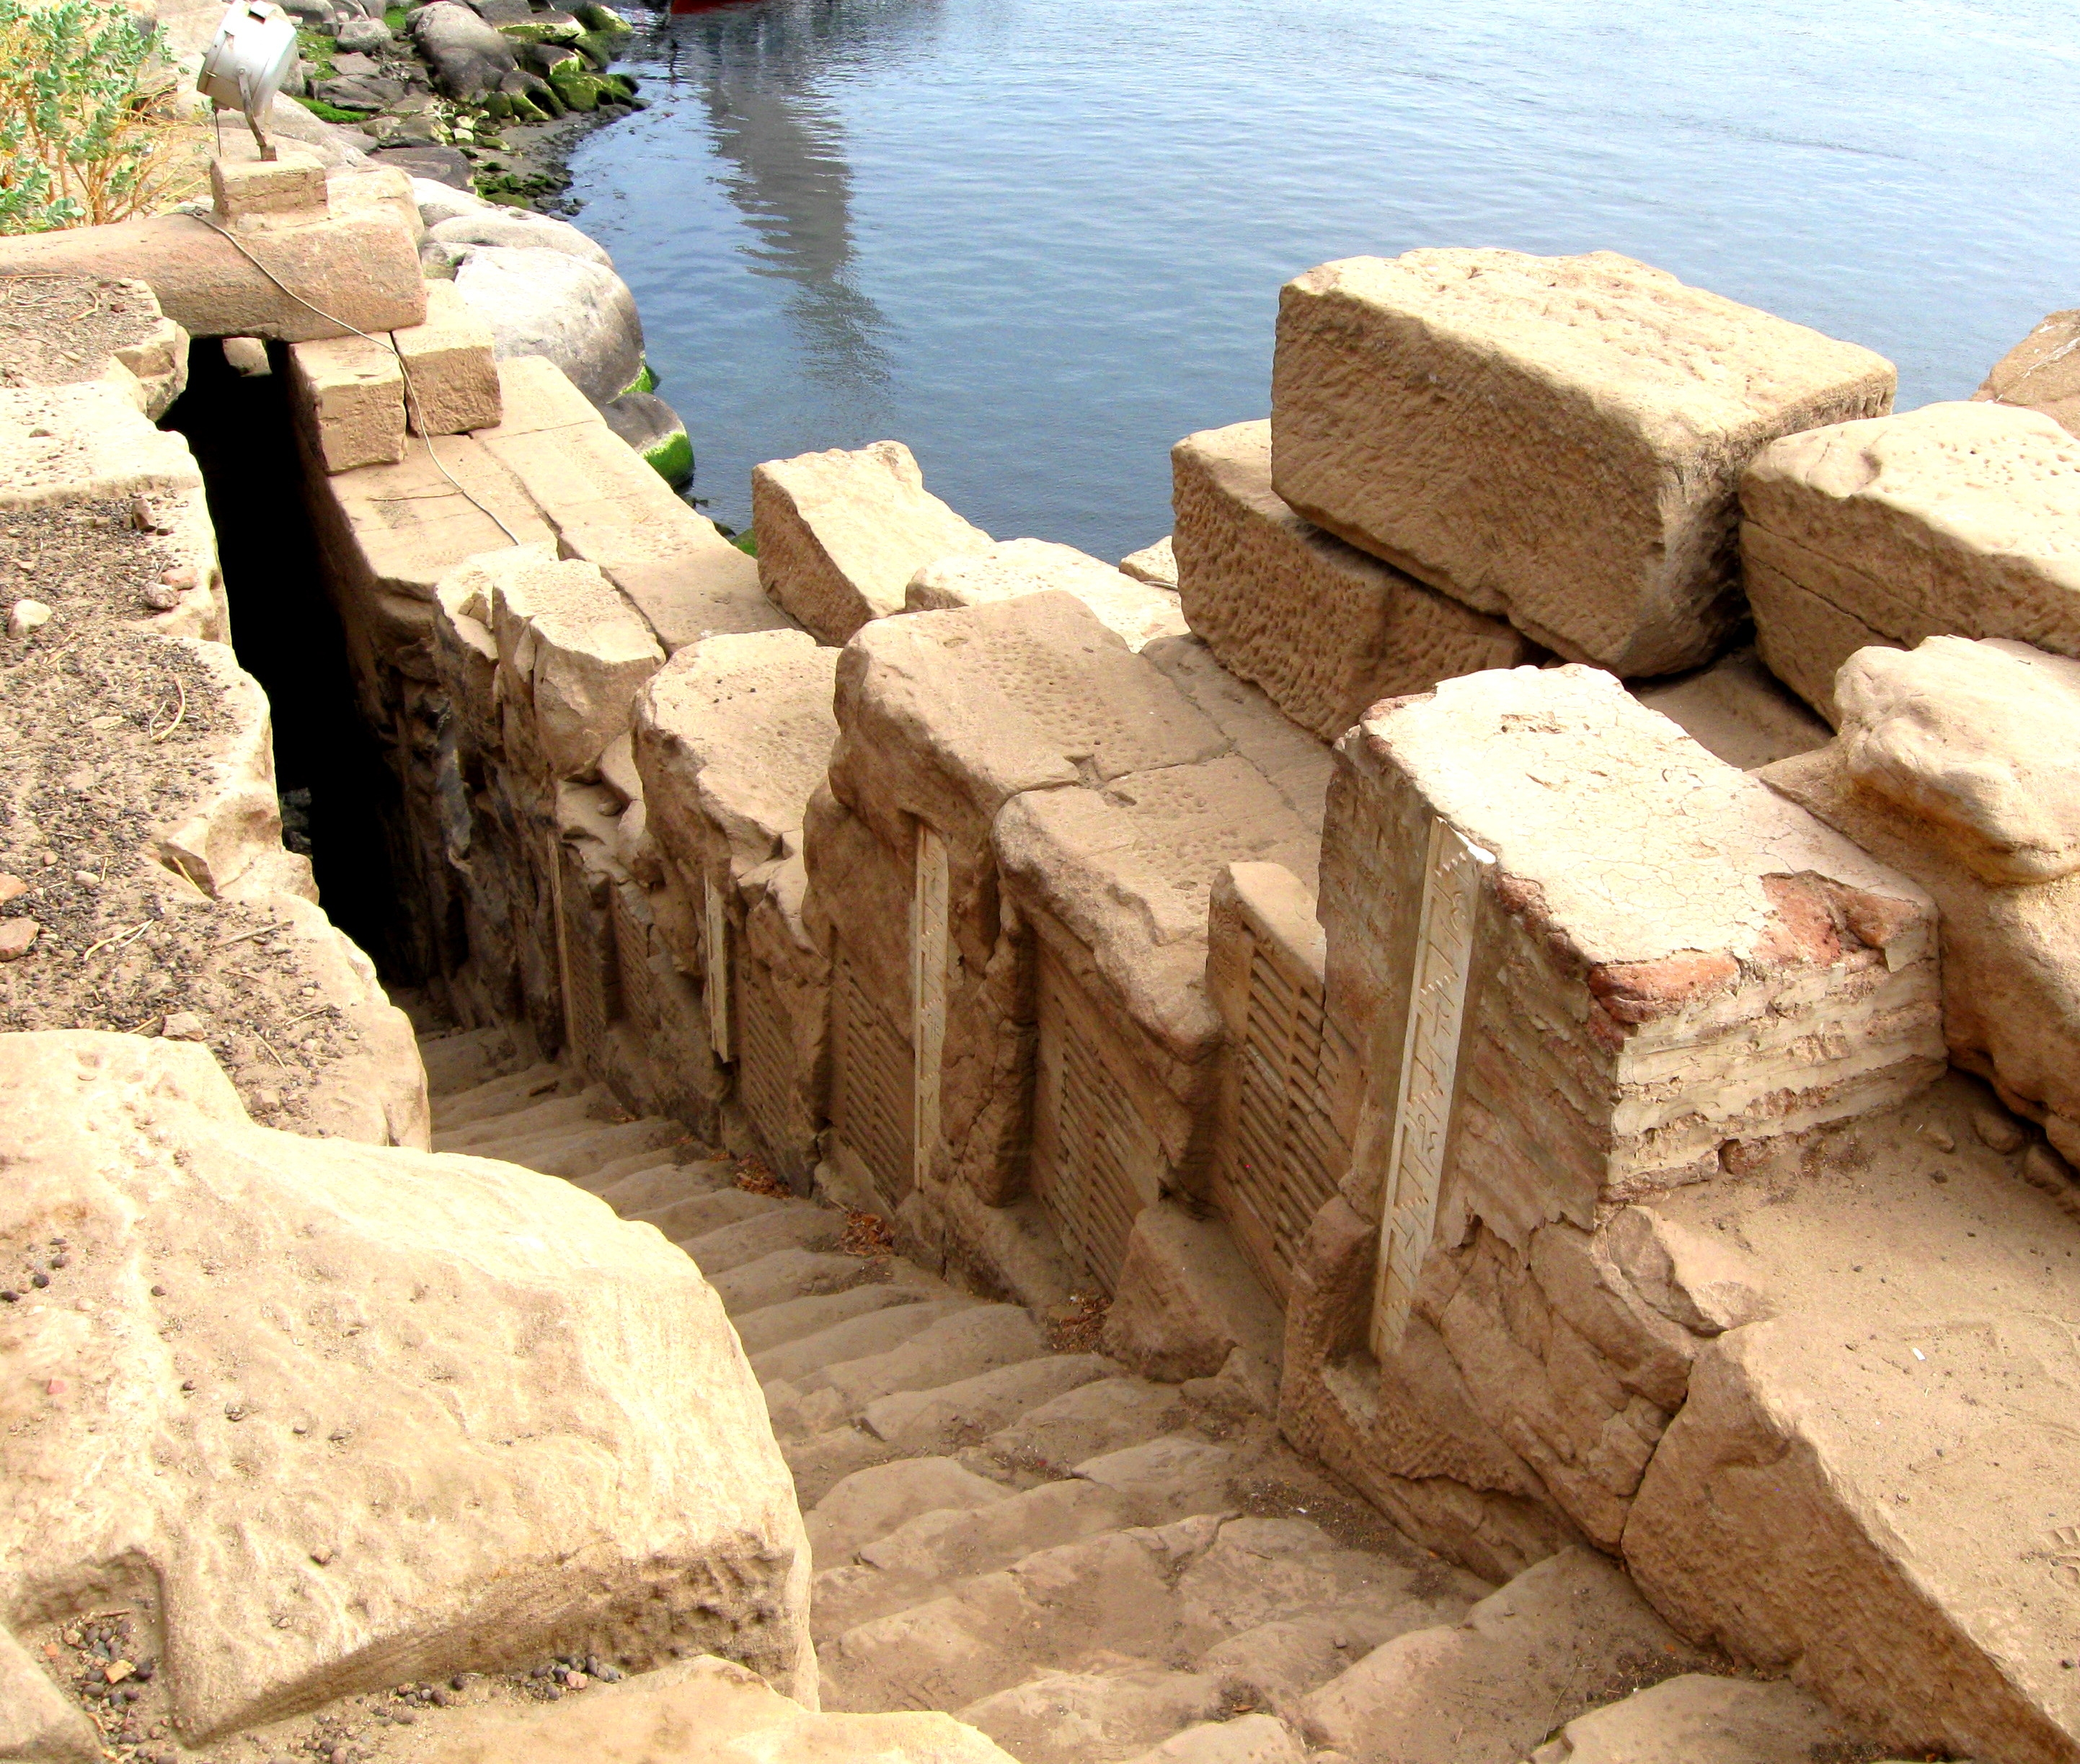 Nilometrul: Structură antică utilizată în măsurarea nivelului râului Nil